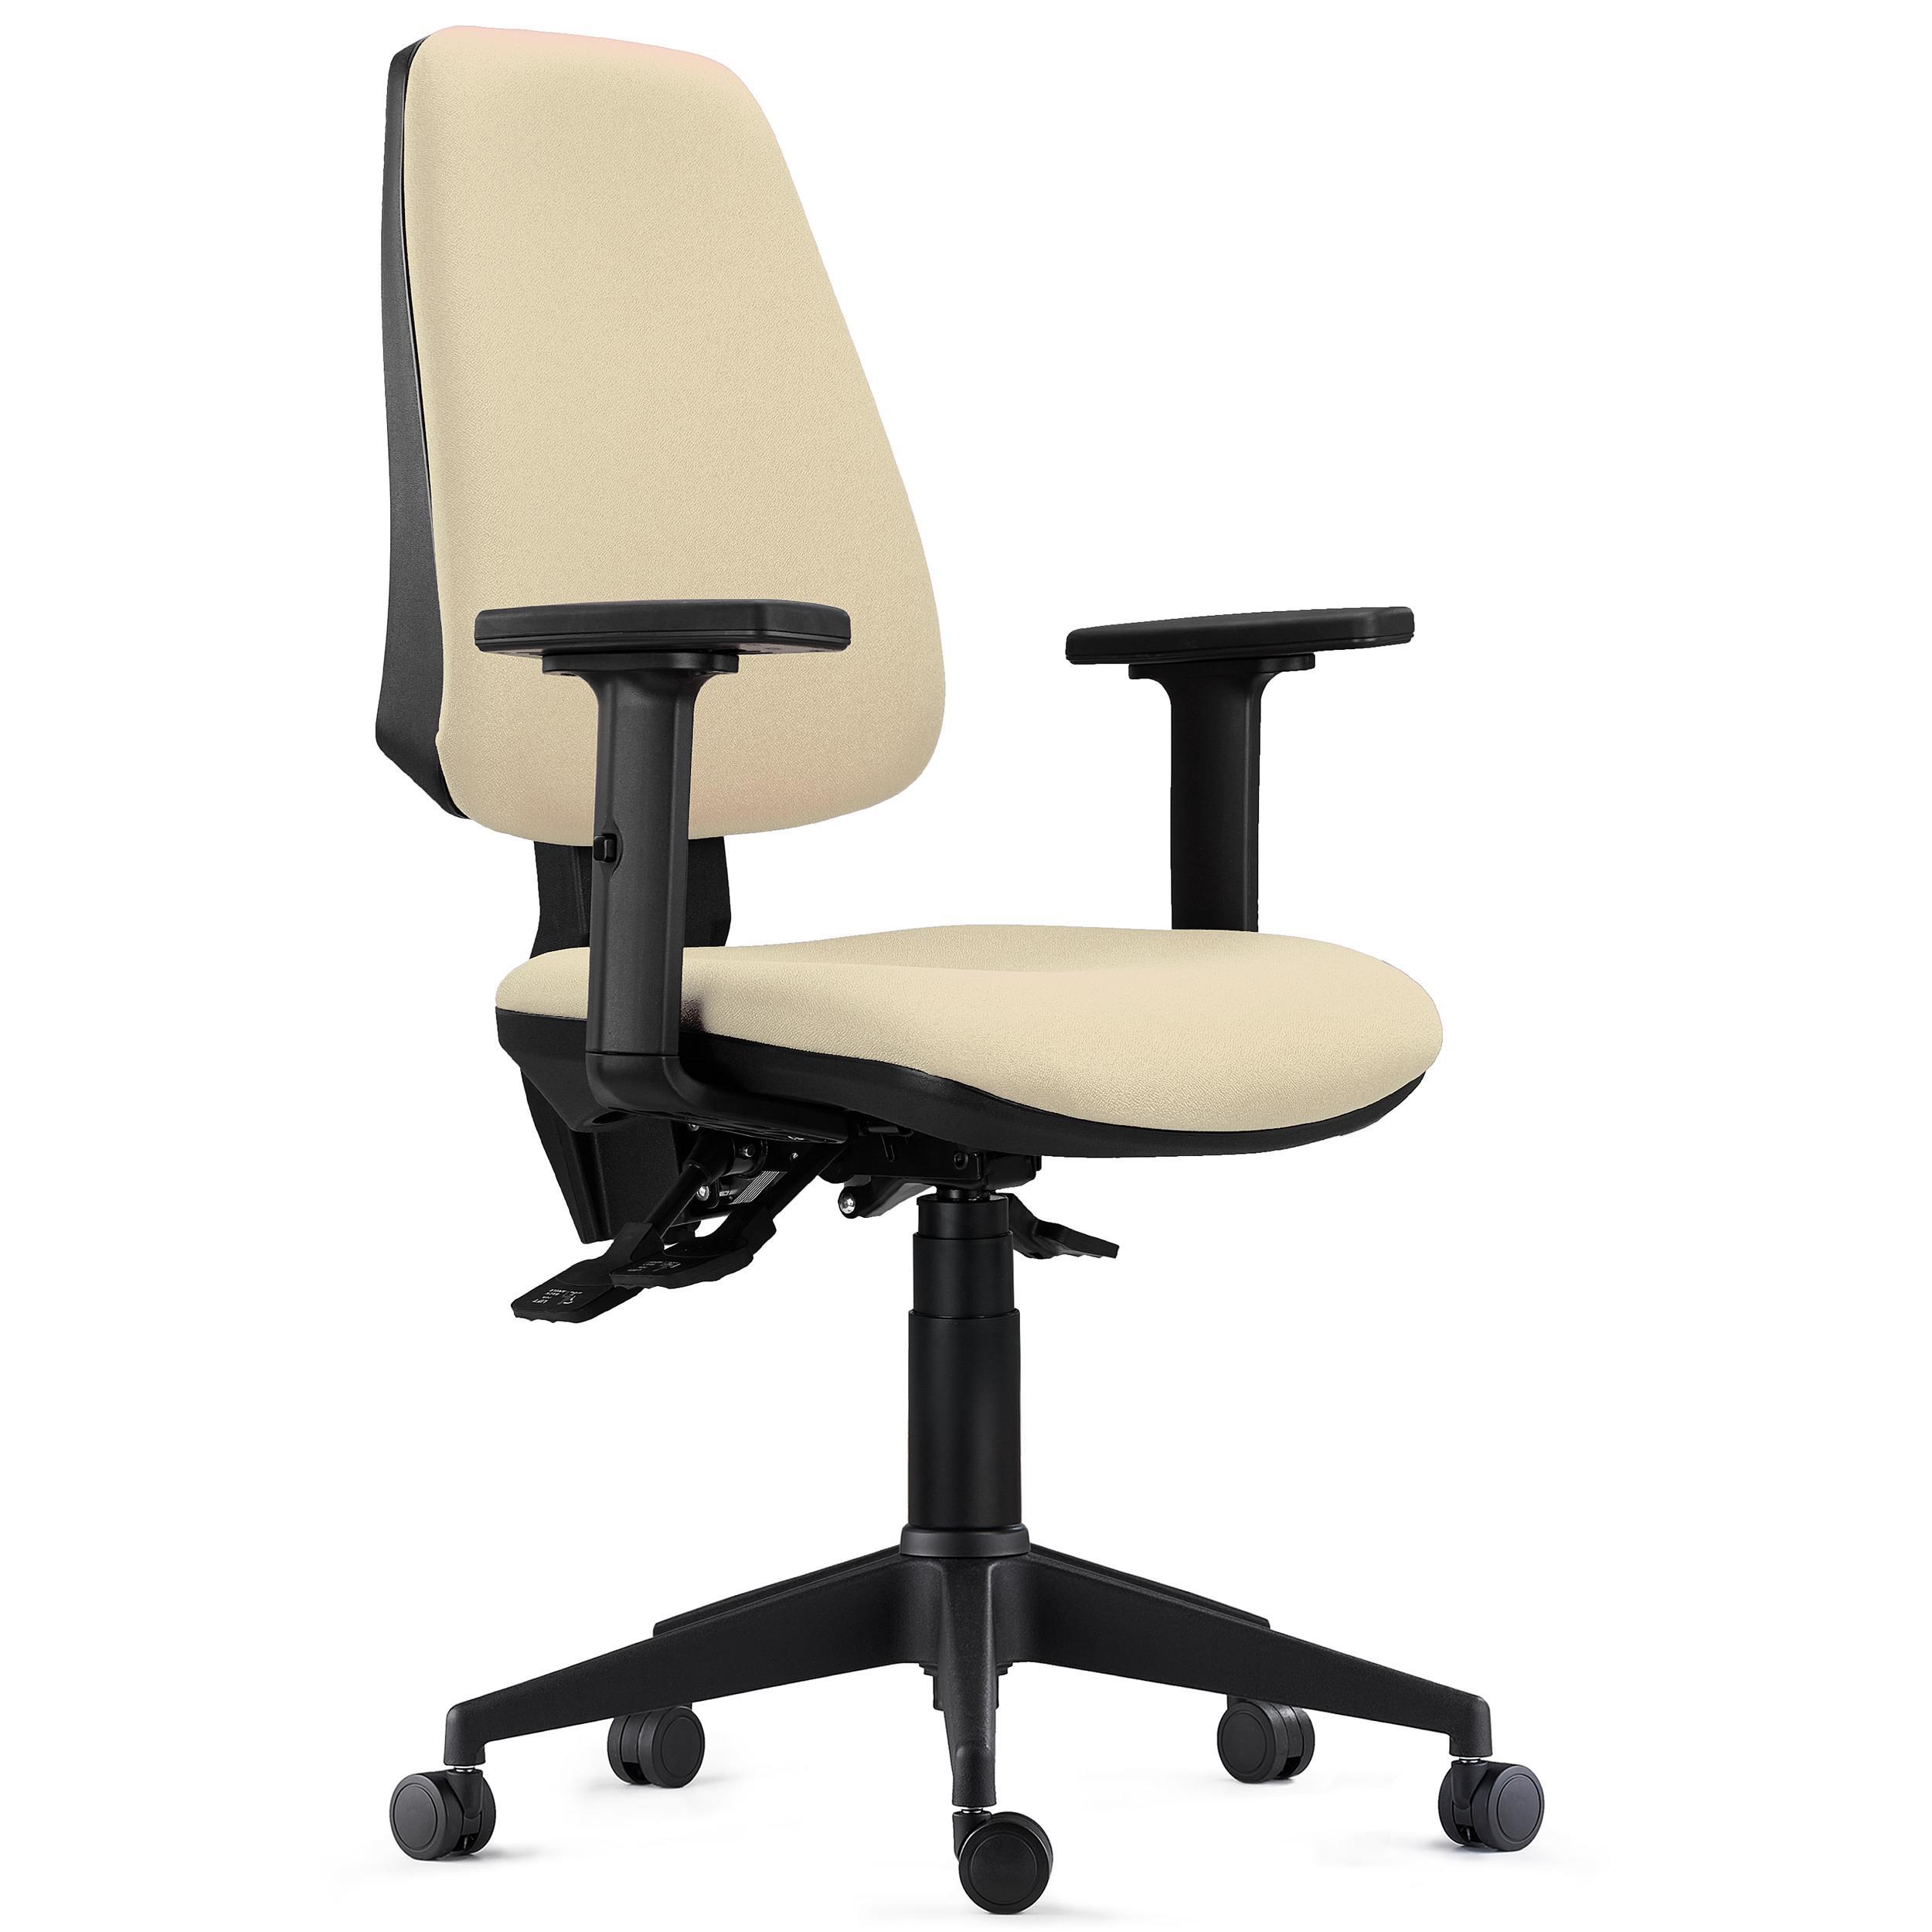 Chaise de Bureau Ergonomique INDIANA PRO, Usage Intensif 8H, avec Accoudoirs Ajustables 2D, en Tissu Crème